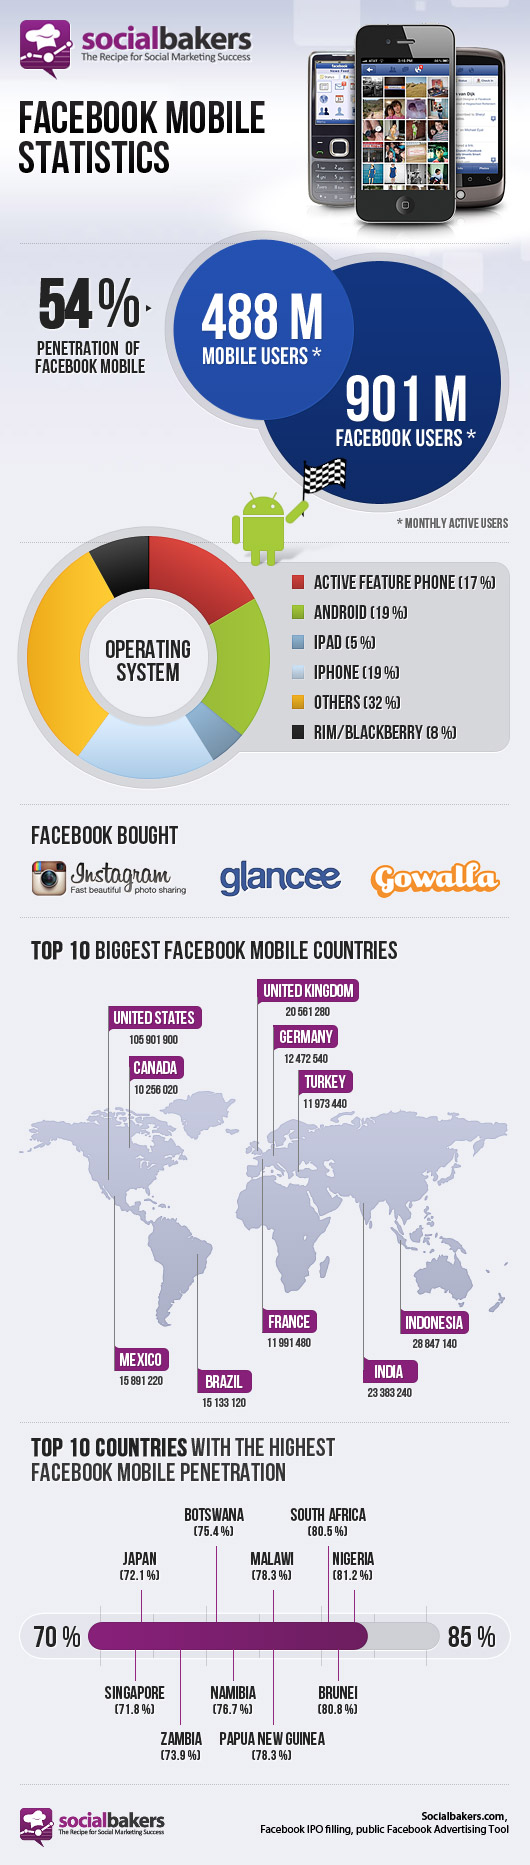 Mobile Nutzung von Facebook - Infografik von socialbakers